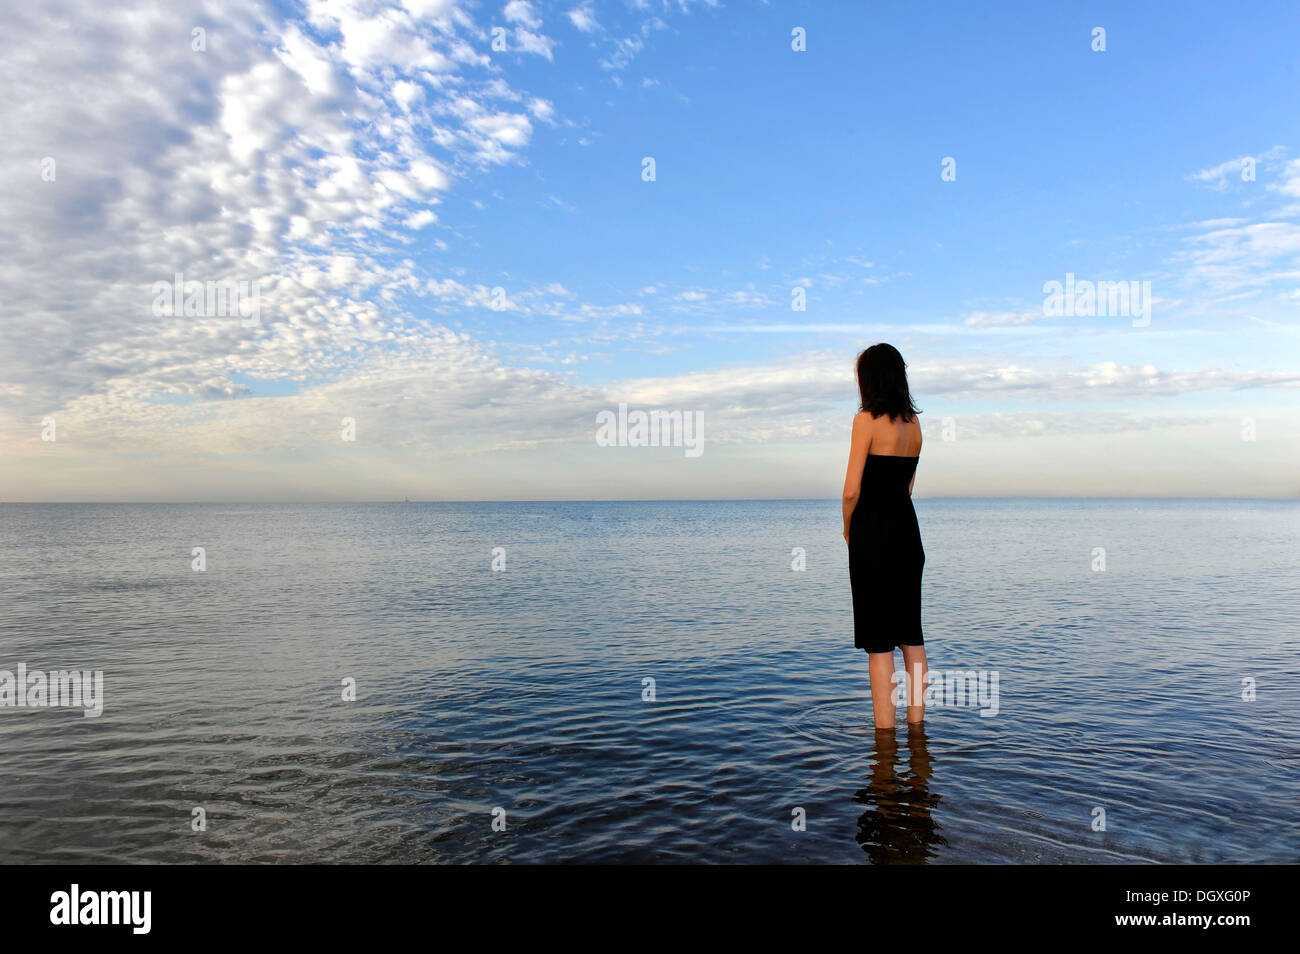 Frau trägt ein schwarzes Kleid stehend im Wasser des Meeres, launisch Wolken, Cavallino, Jesolo, Venedig, Italien Stockfoto